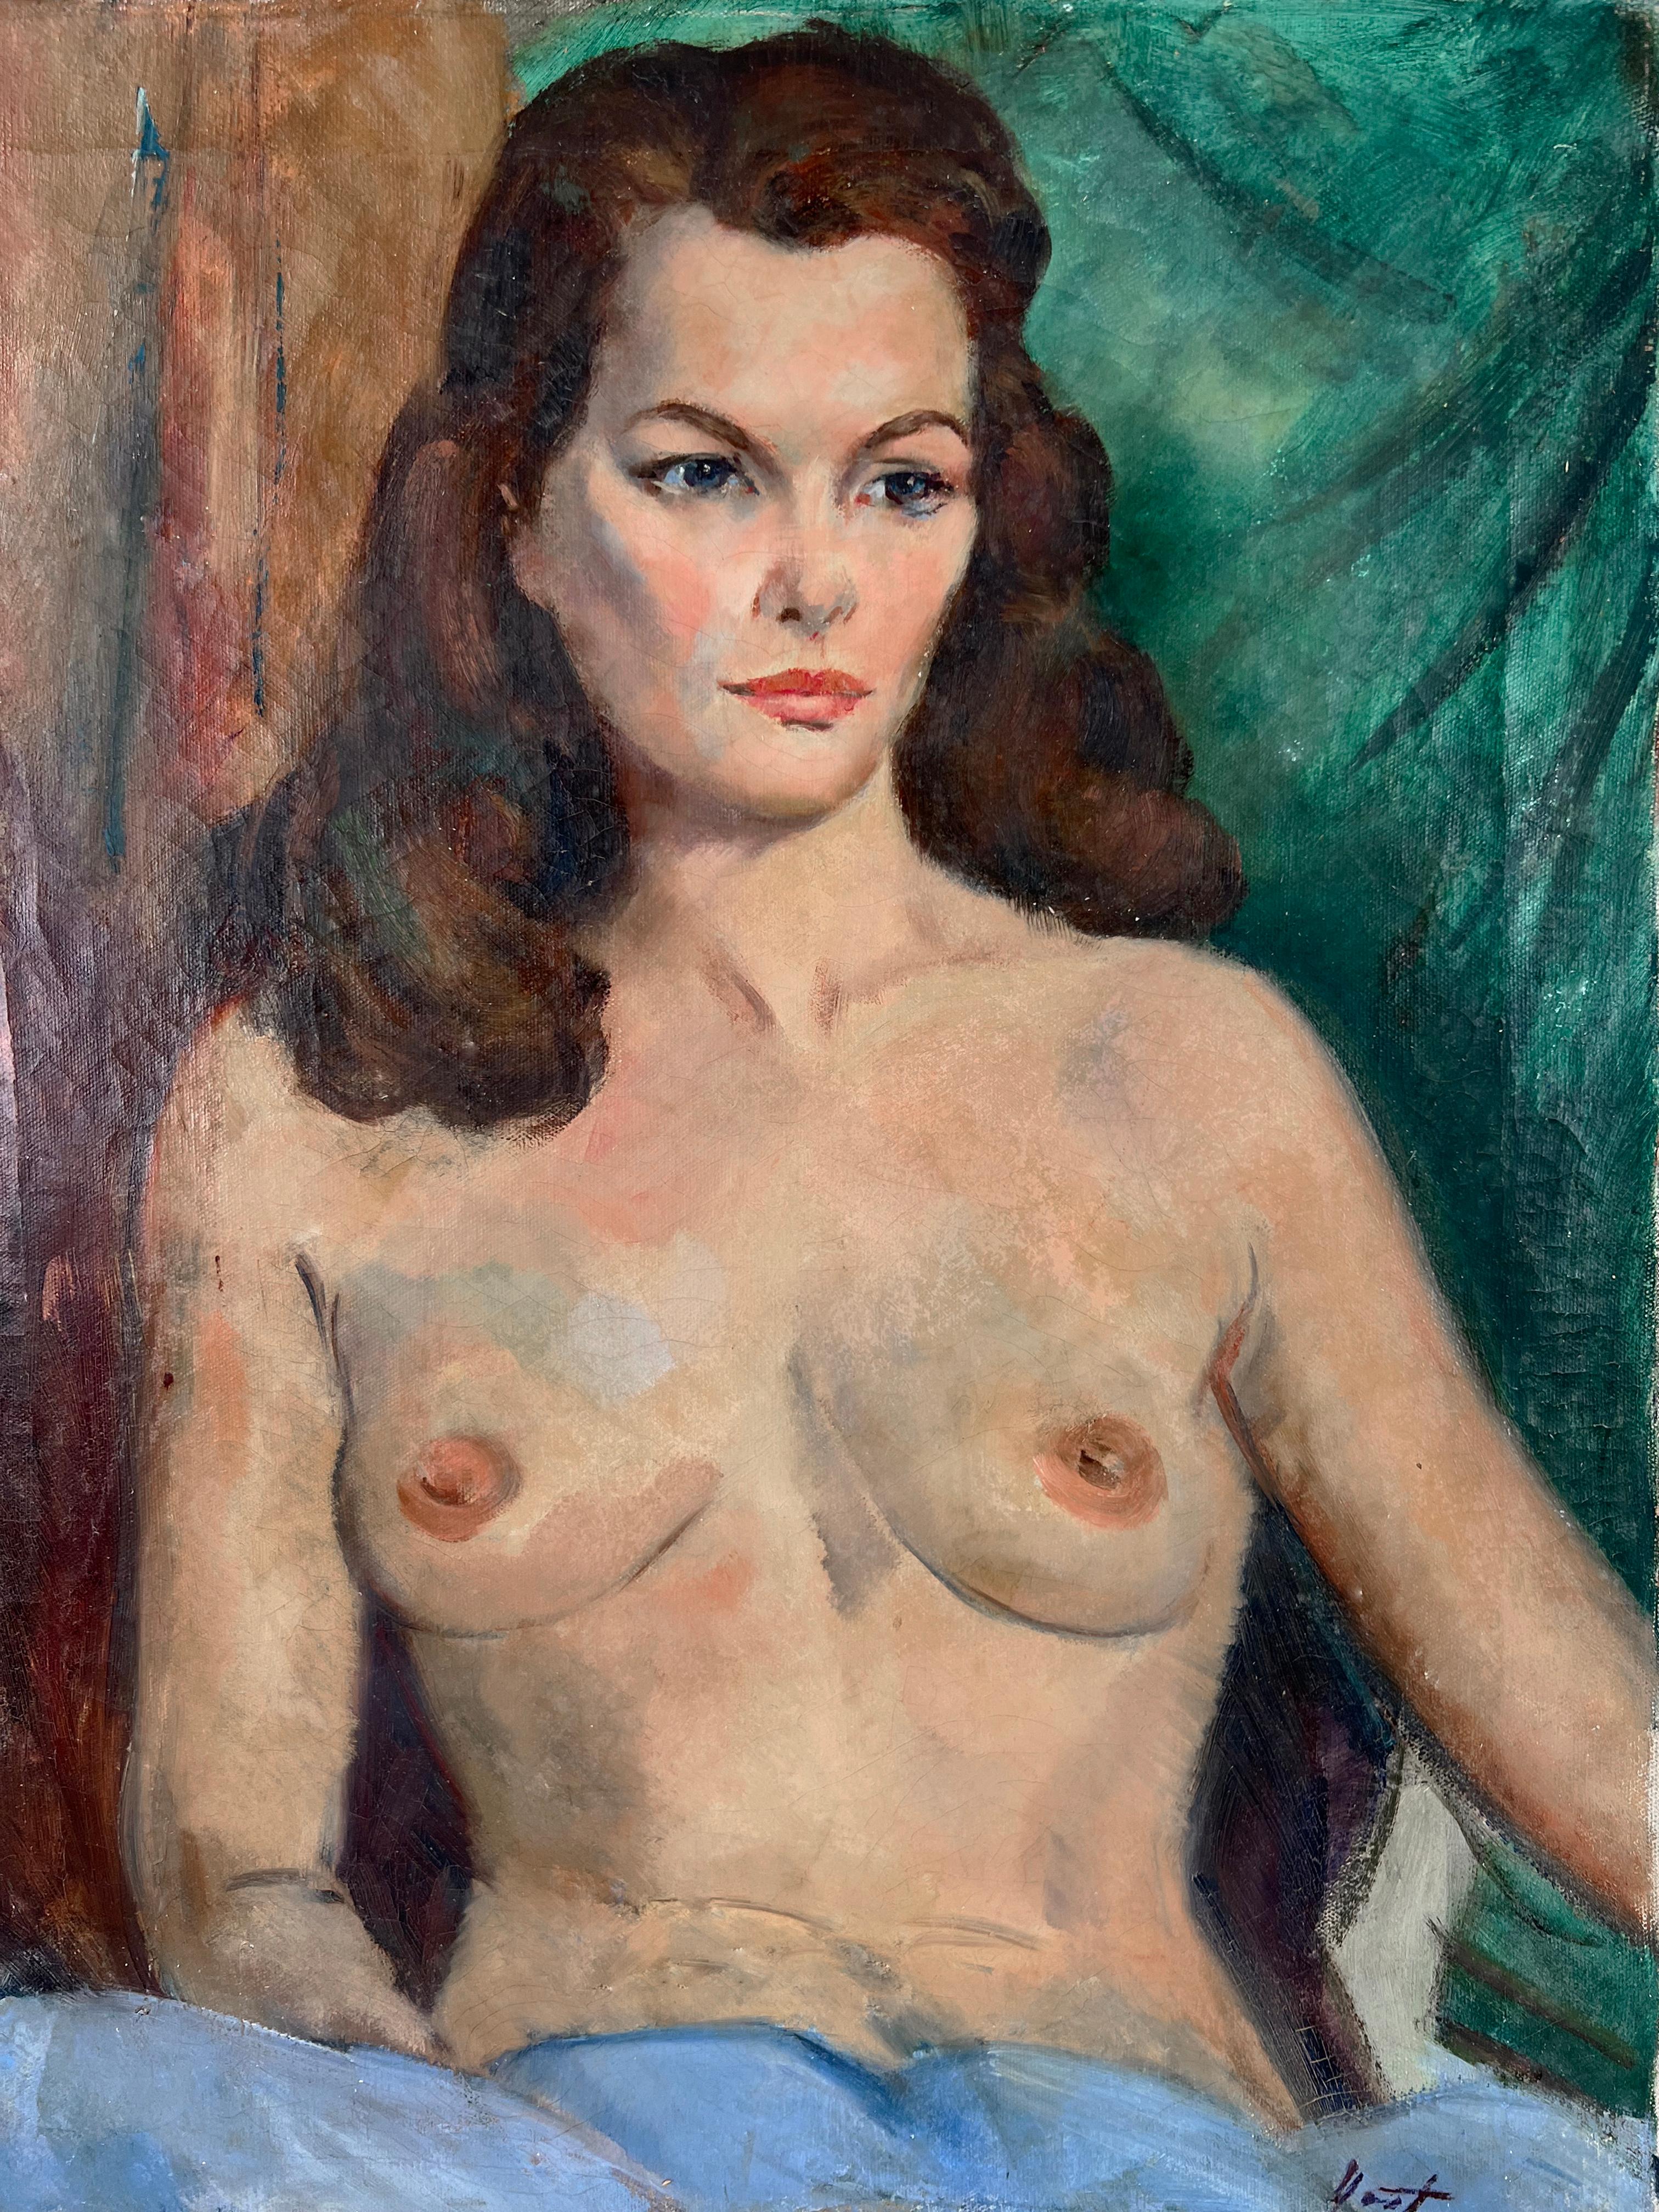 Sitzende nackte Frau, amerikanische impressionistische Schule der 1940er Jahre, von Fred Yost  – Painting von Frederick Yost